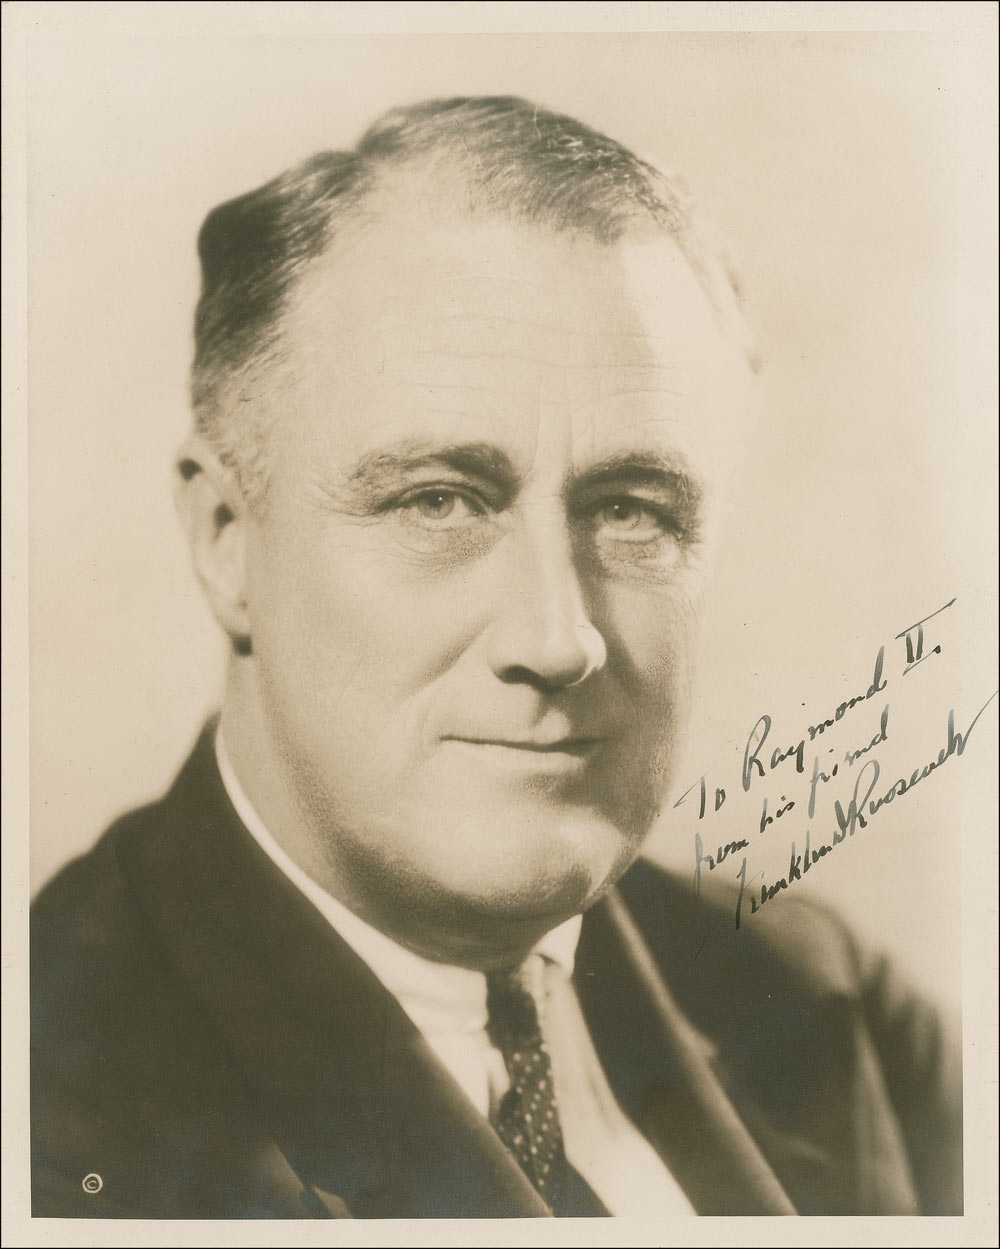 Lot #131 Franklin D. Roosevelt